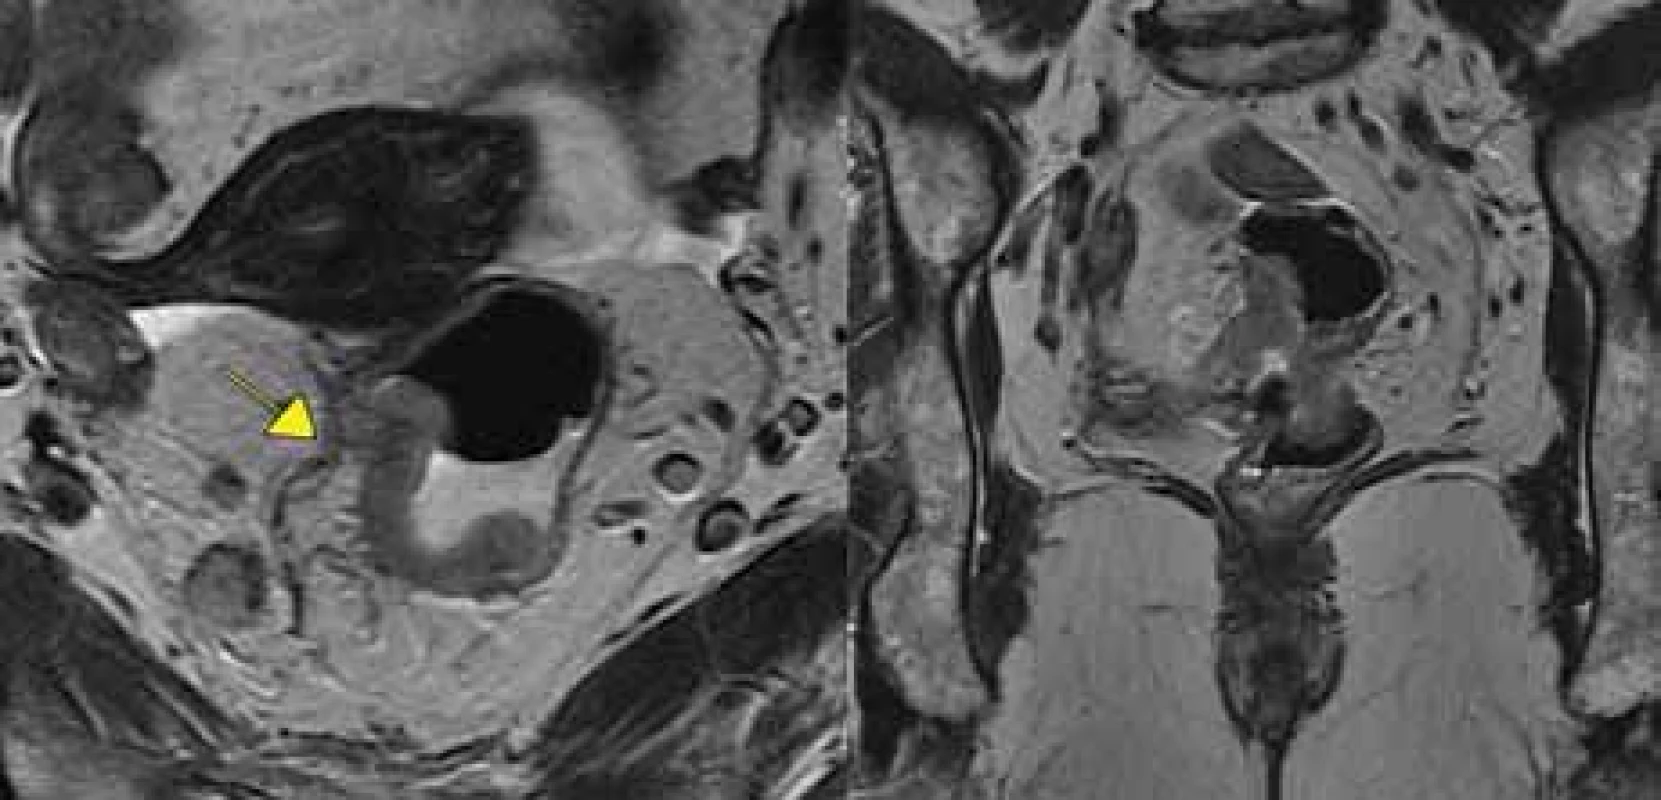 Tumor s extramurální vaskulární invazí+, vlevo transverzální rovina, vpravo
koronární rovina. 